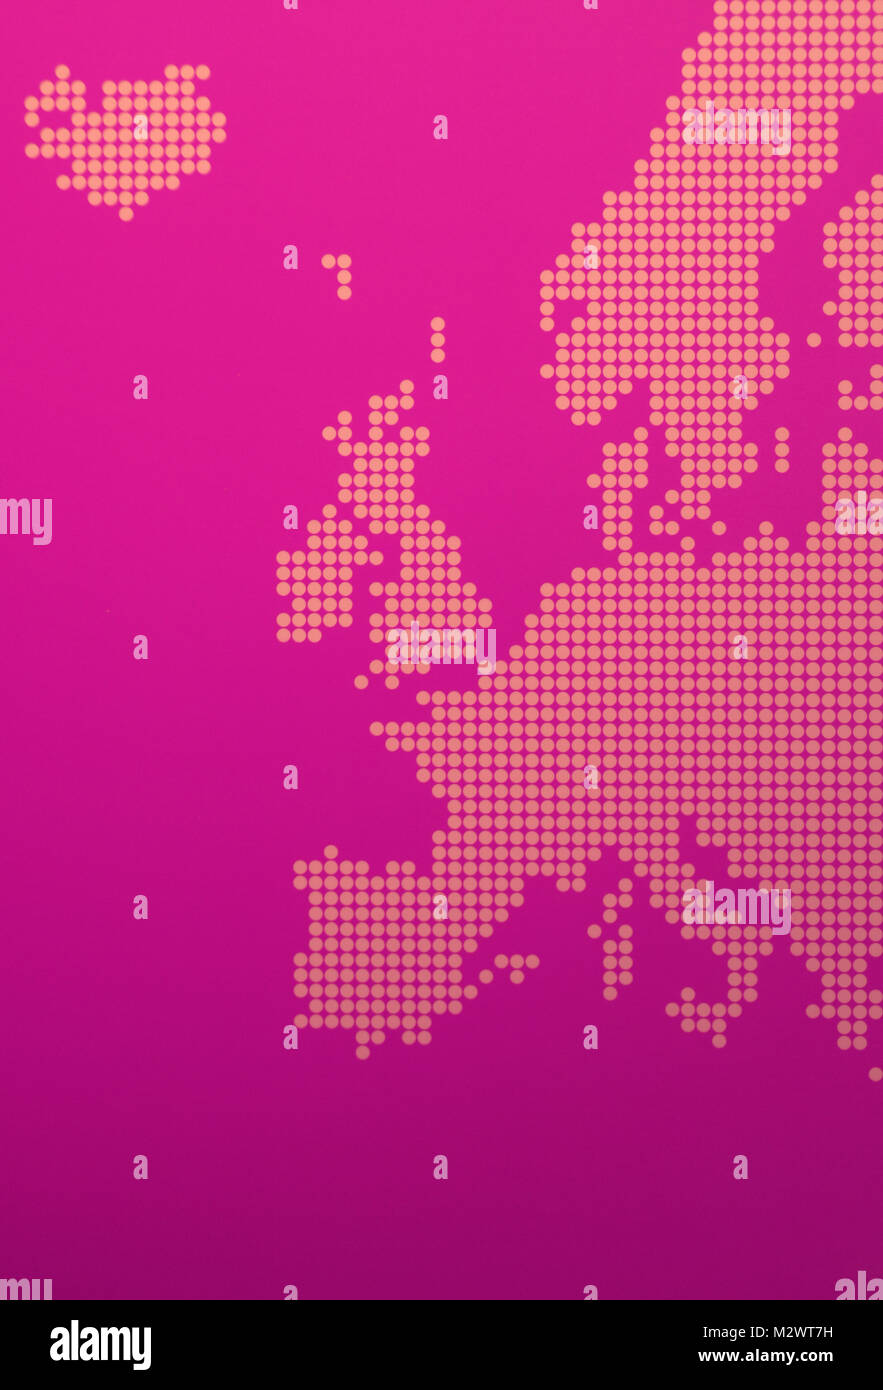 Rappresentazione grafica di Europa - stilizzazione di una mappa europea viola Foto Stock